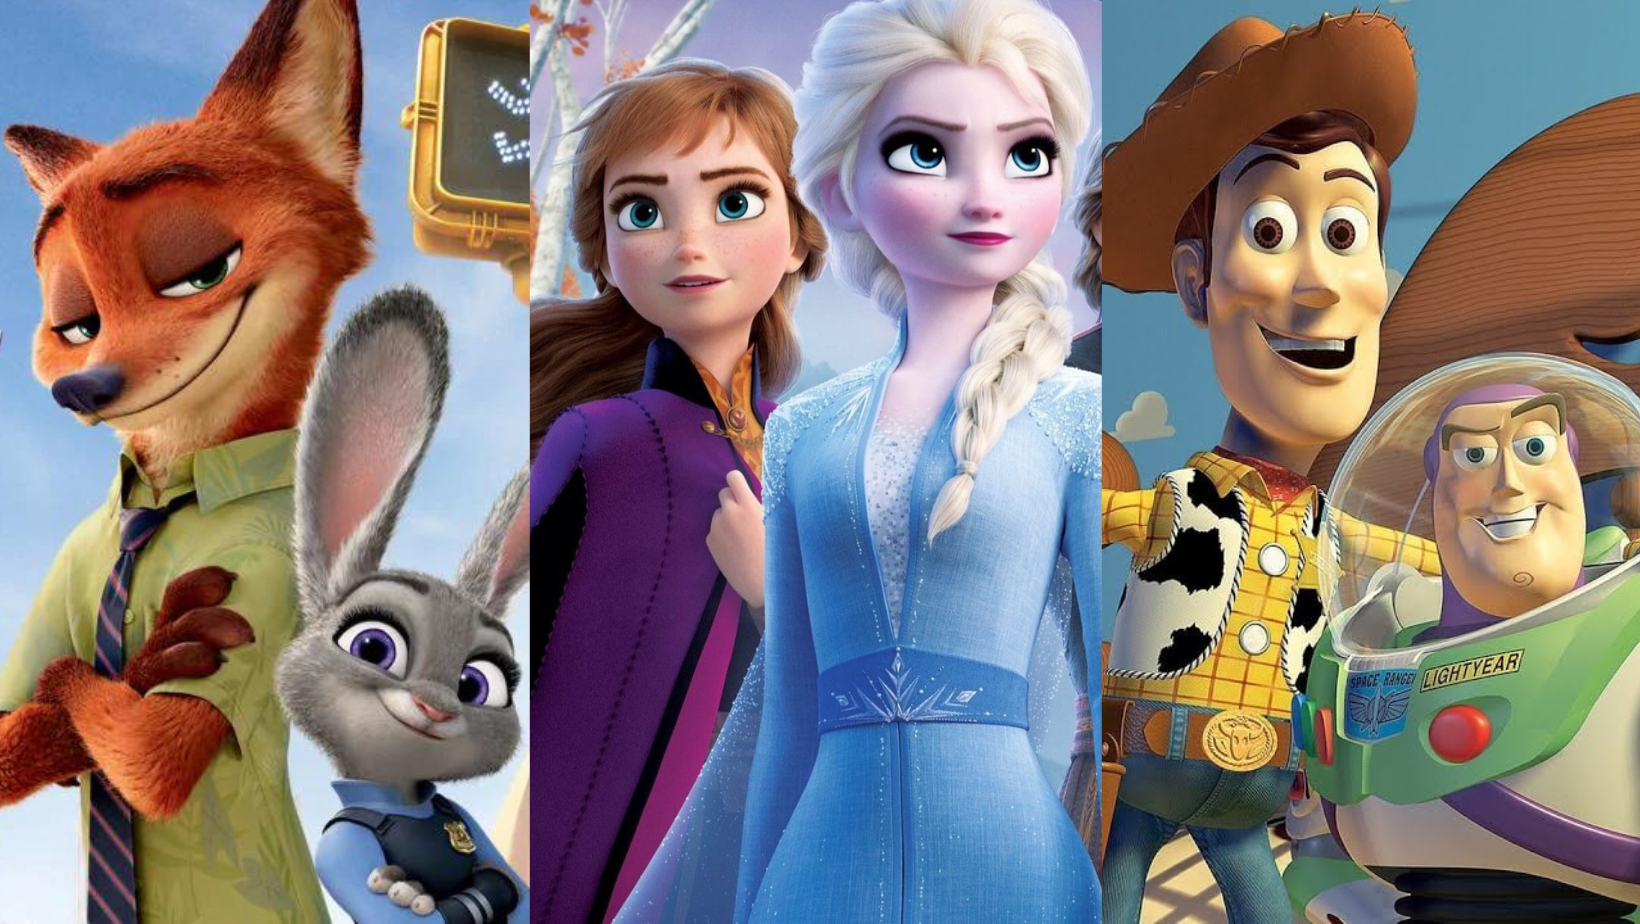 Disney anuncia Toy Story 5, Frozen 3 e Zootopia 2